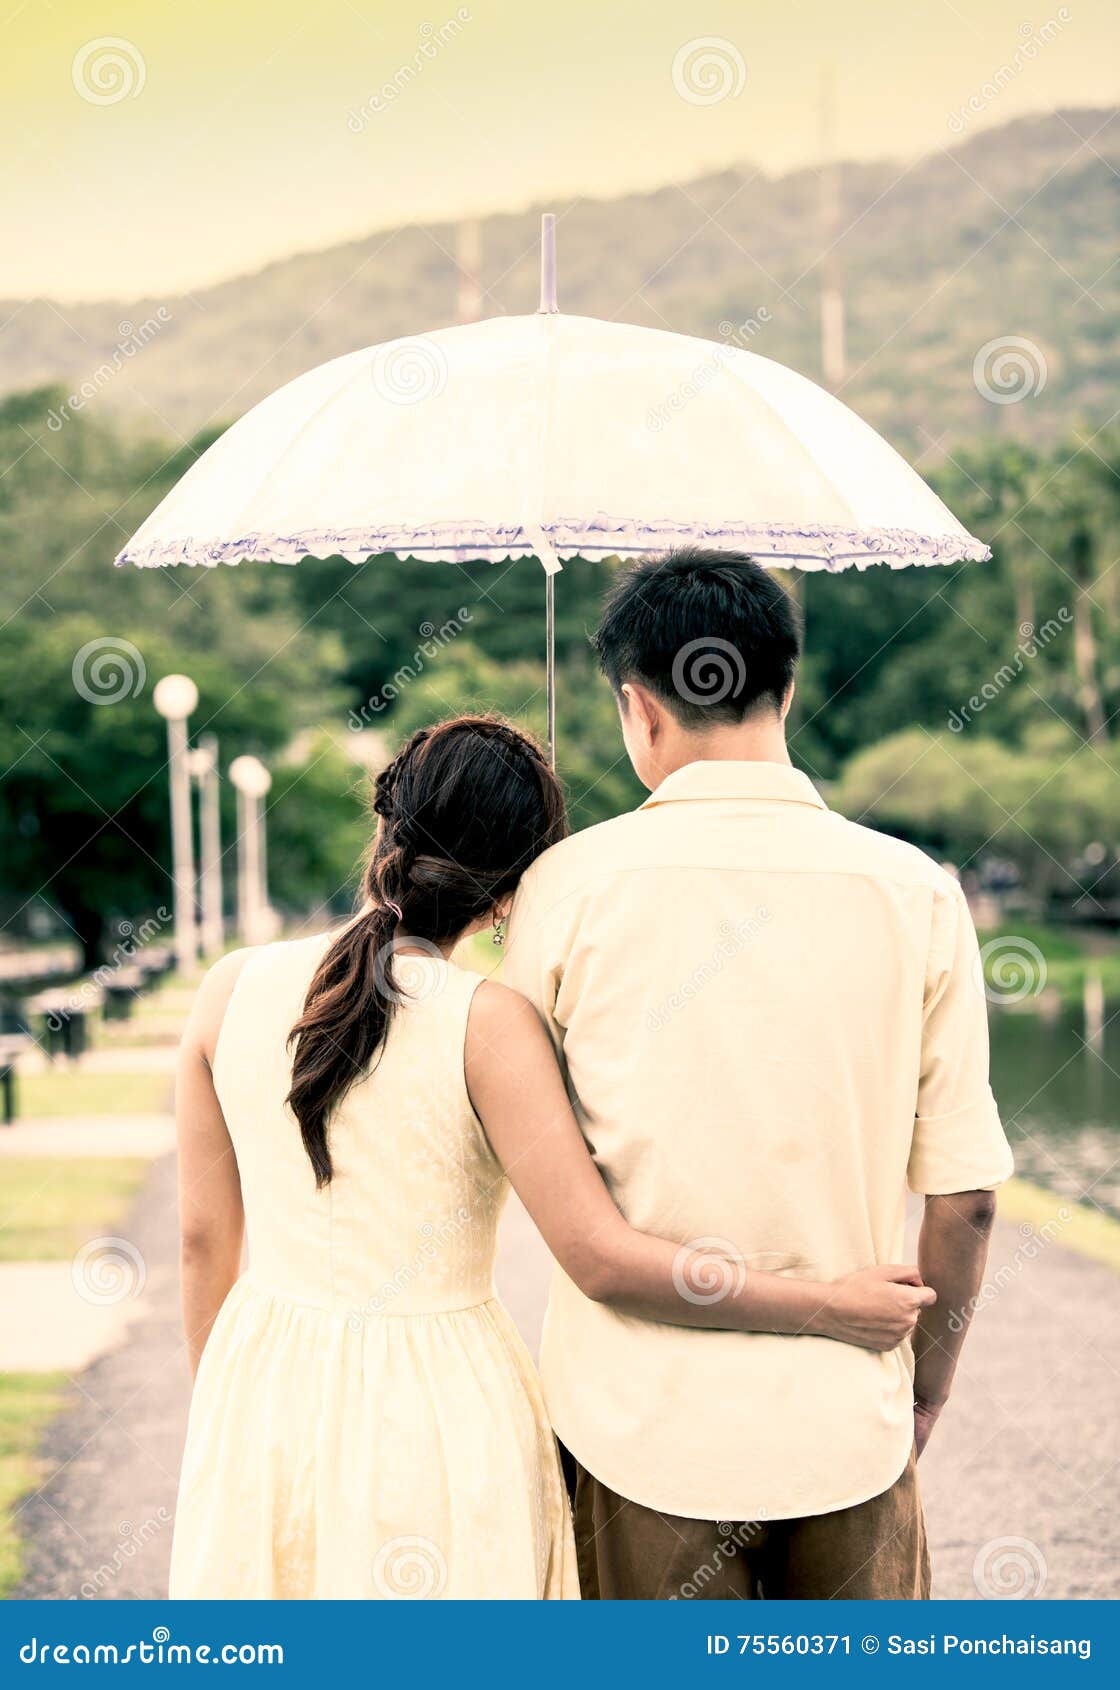 Umbrella dating